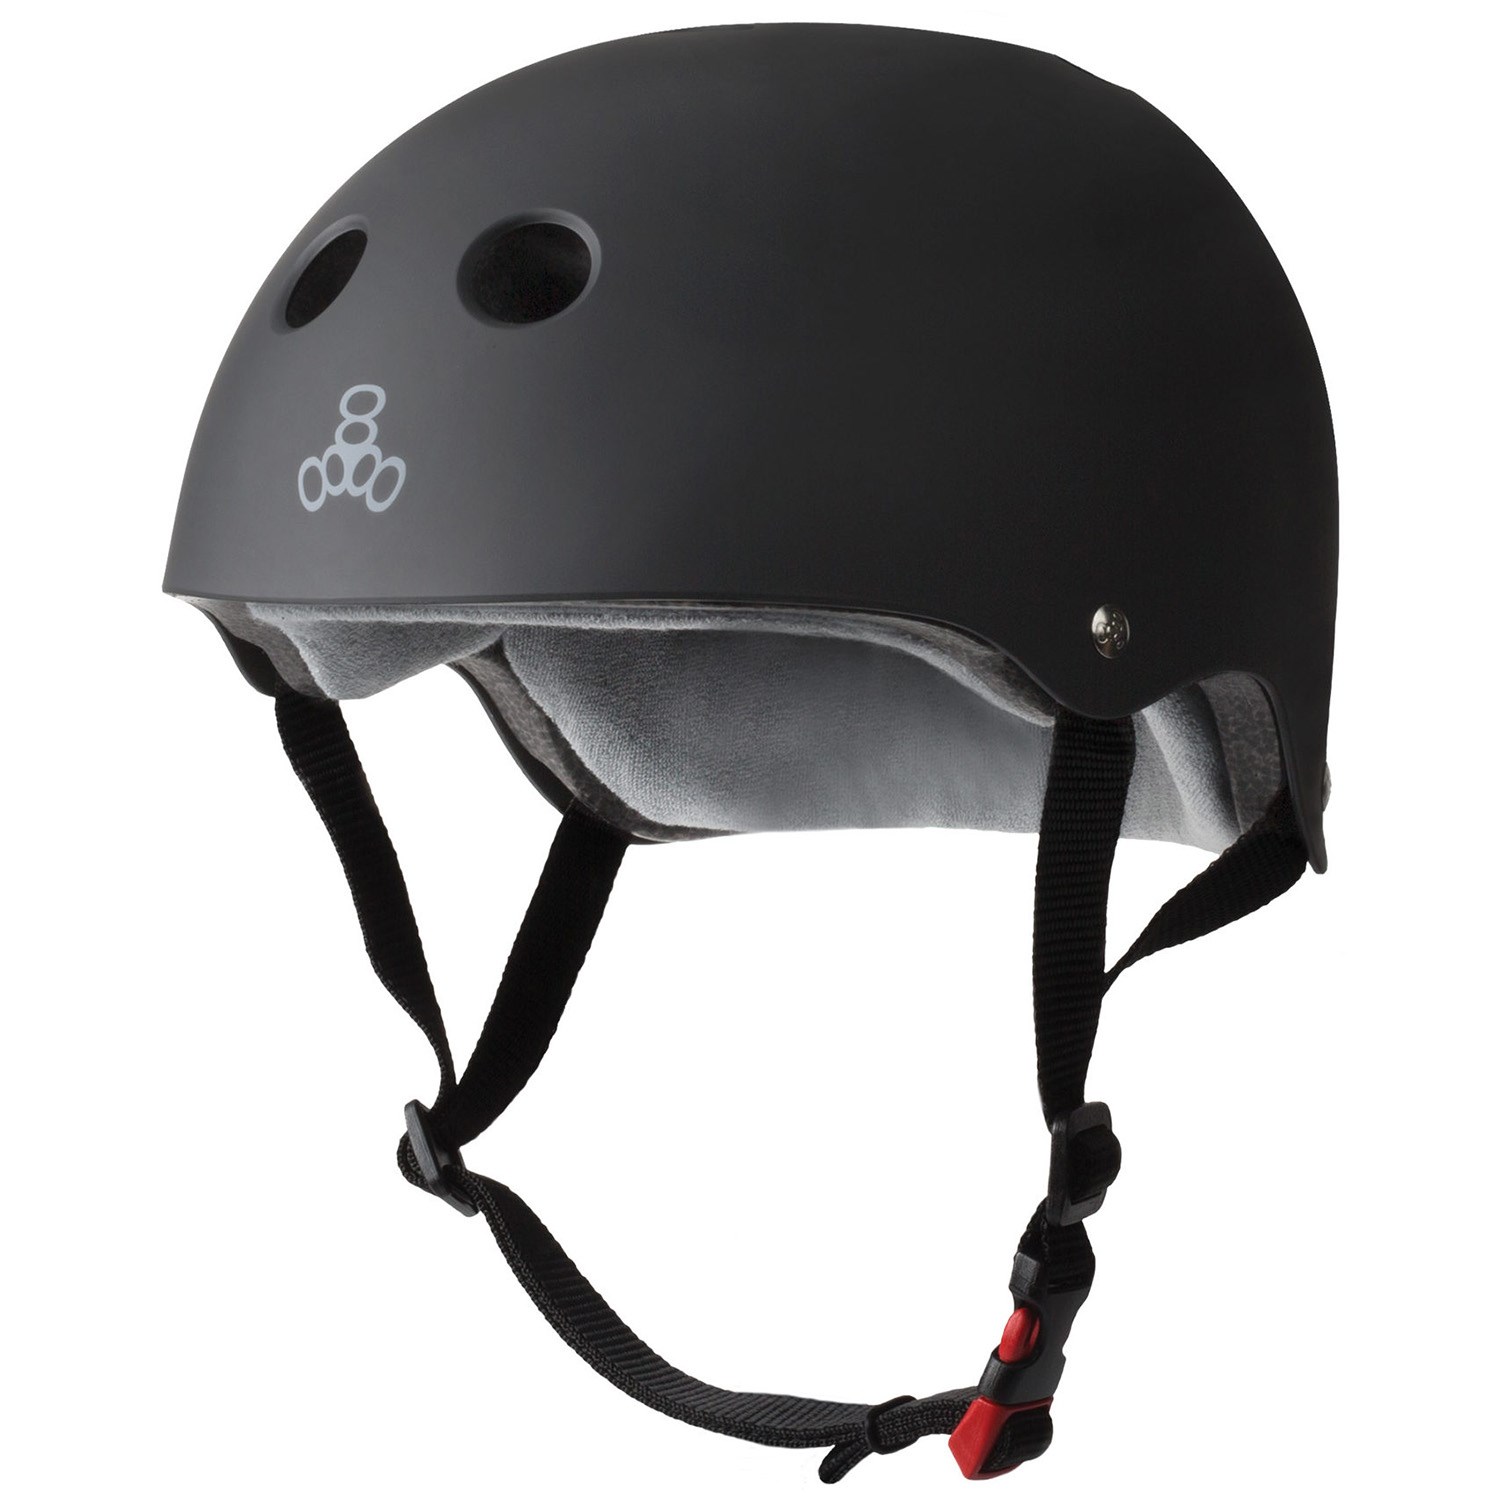 Small Triple 8 Skater Hardened Skate Helmet w/ Sweatsaver Liner Black Rubber 